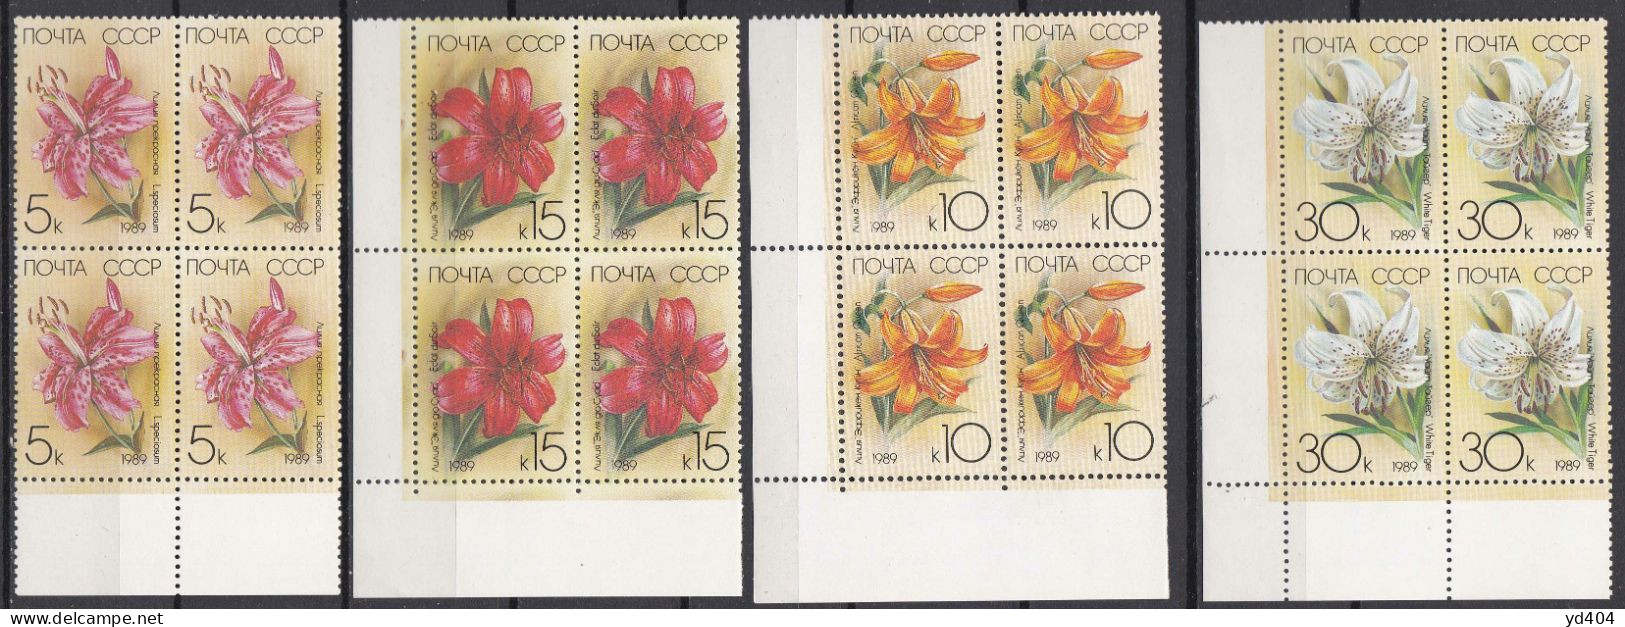 RU146– URSS - USSR – 1989 – FLOWERS / LILIES – SG # 5558/62 MNH 11 € - Ongebruikt